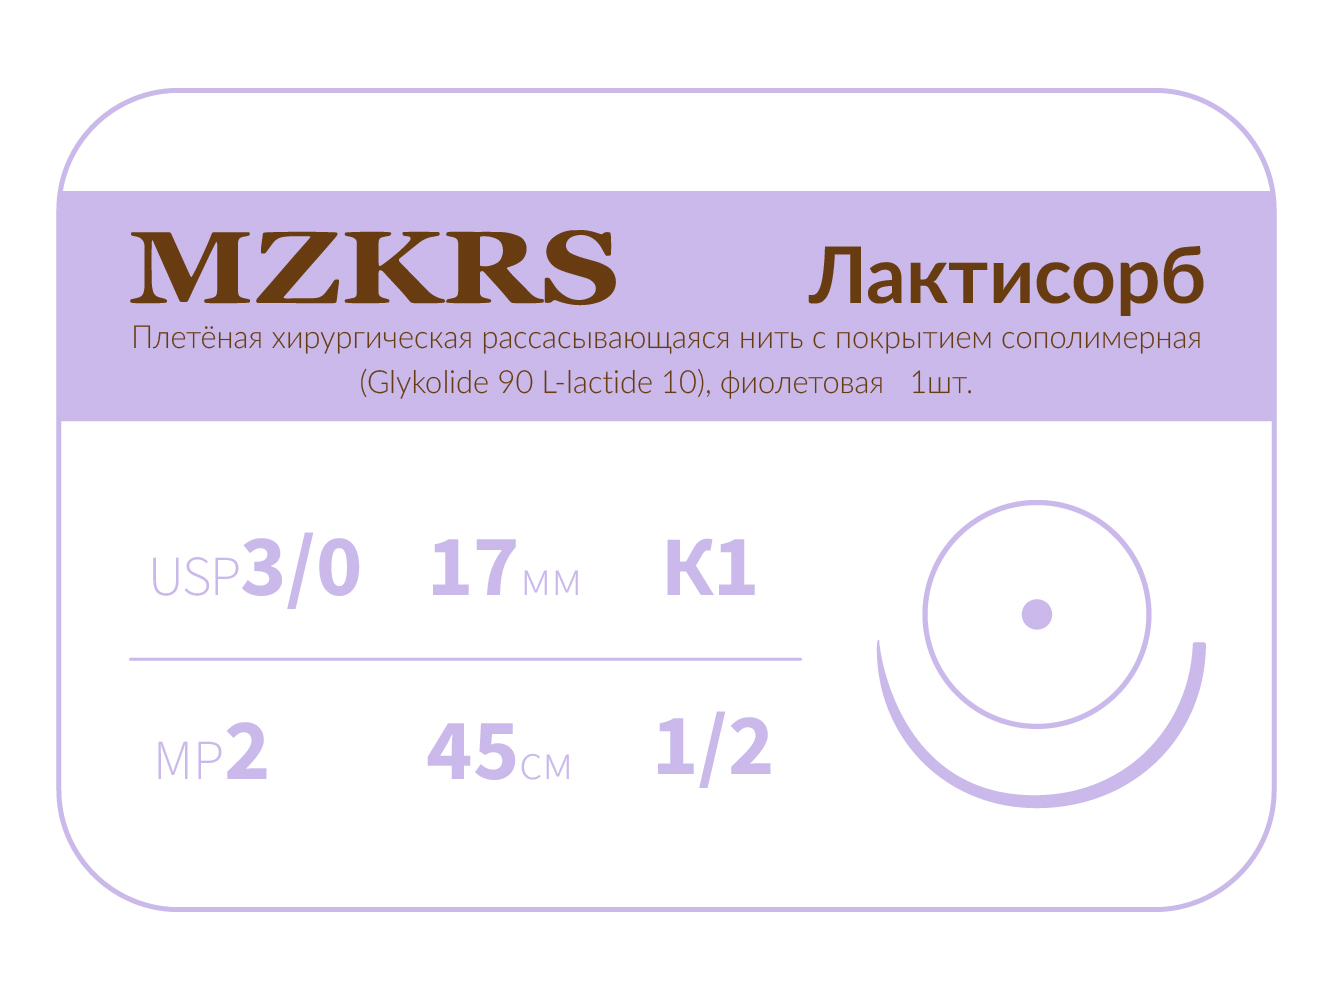 1712К1-Premium-3/0 (2)45 ПГЛ ЛАКТИСОРБ хирургическая нить сополимерная, MZKRS (Россия)